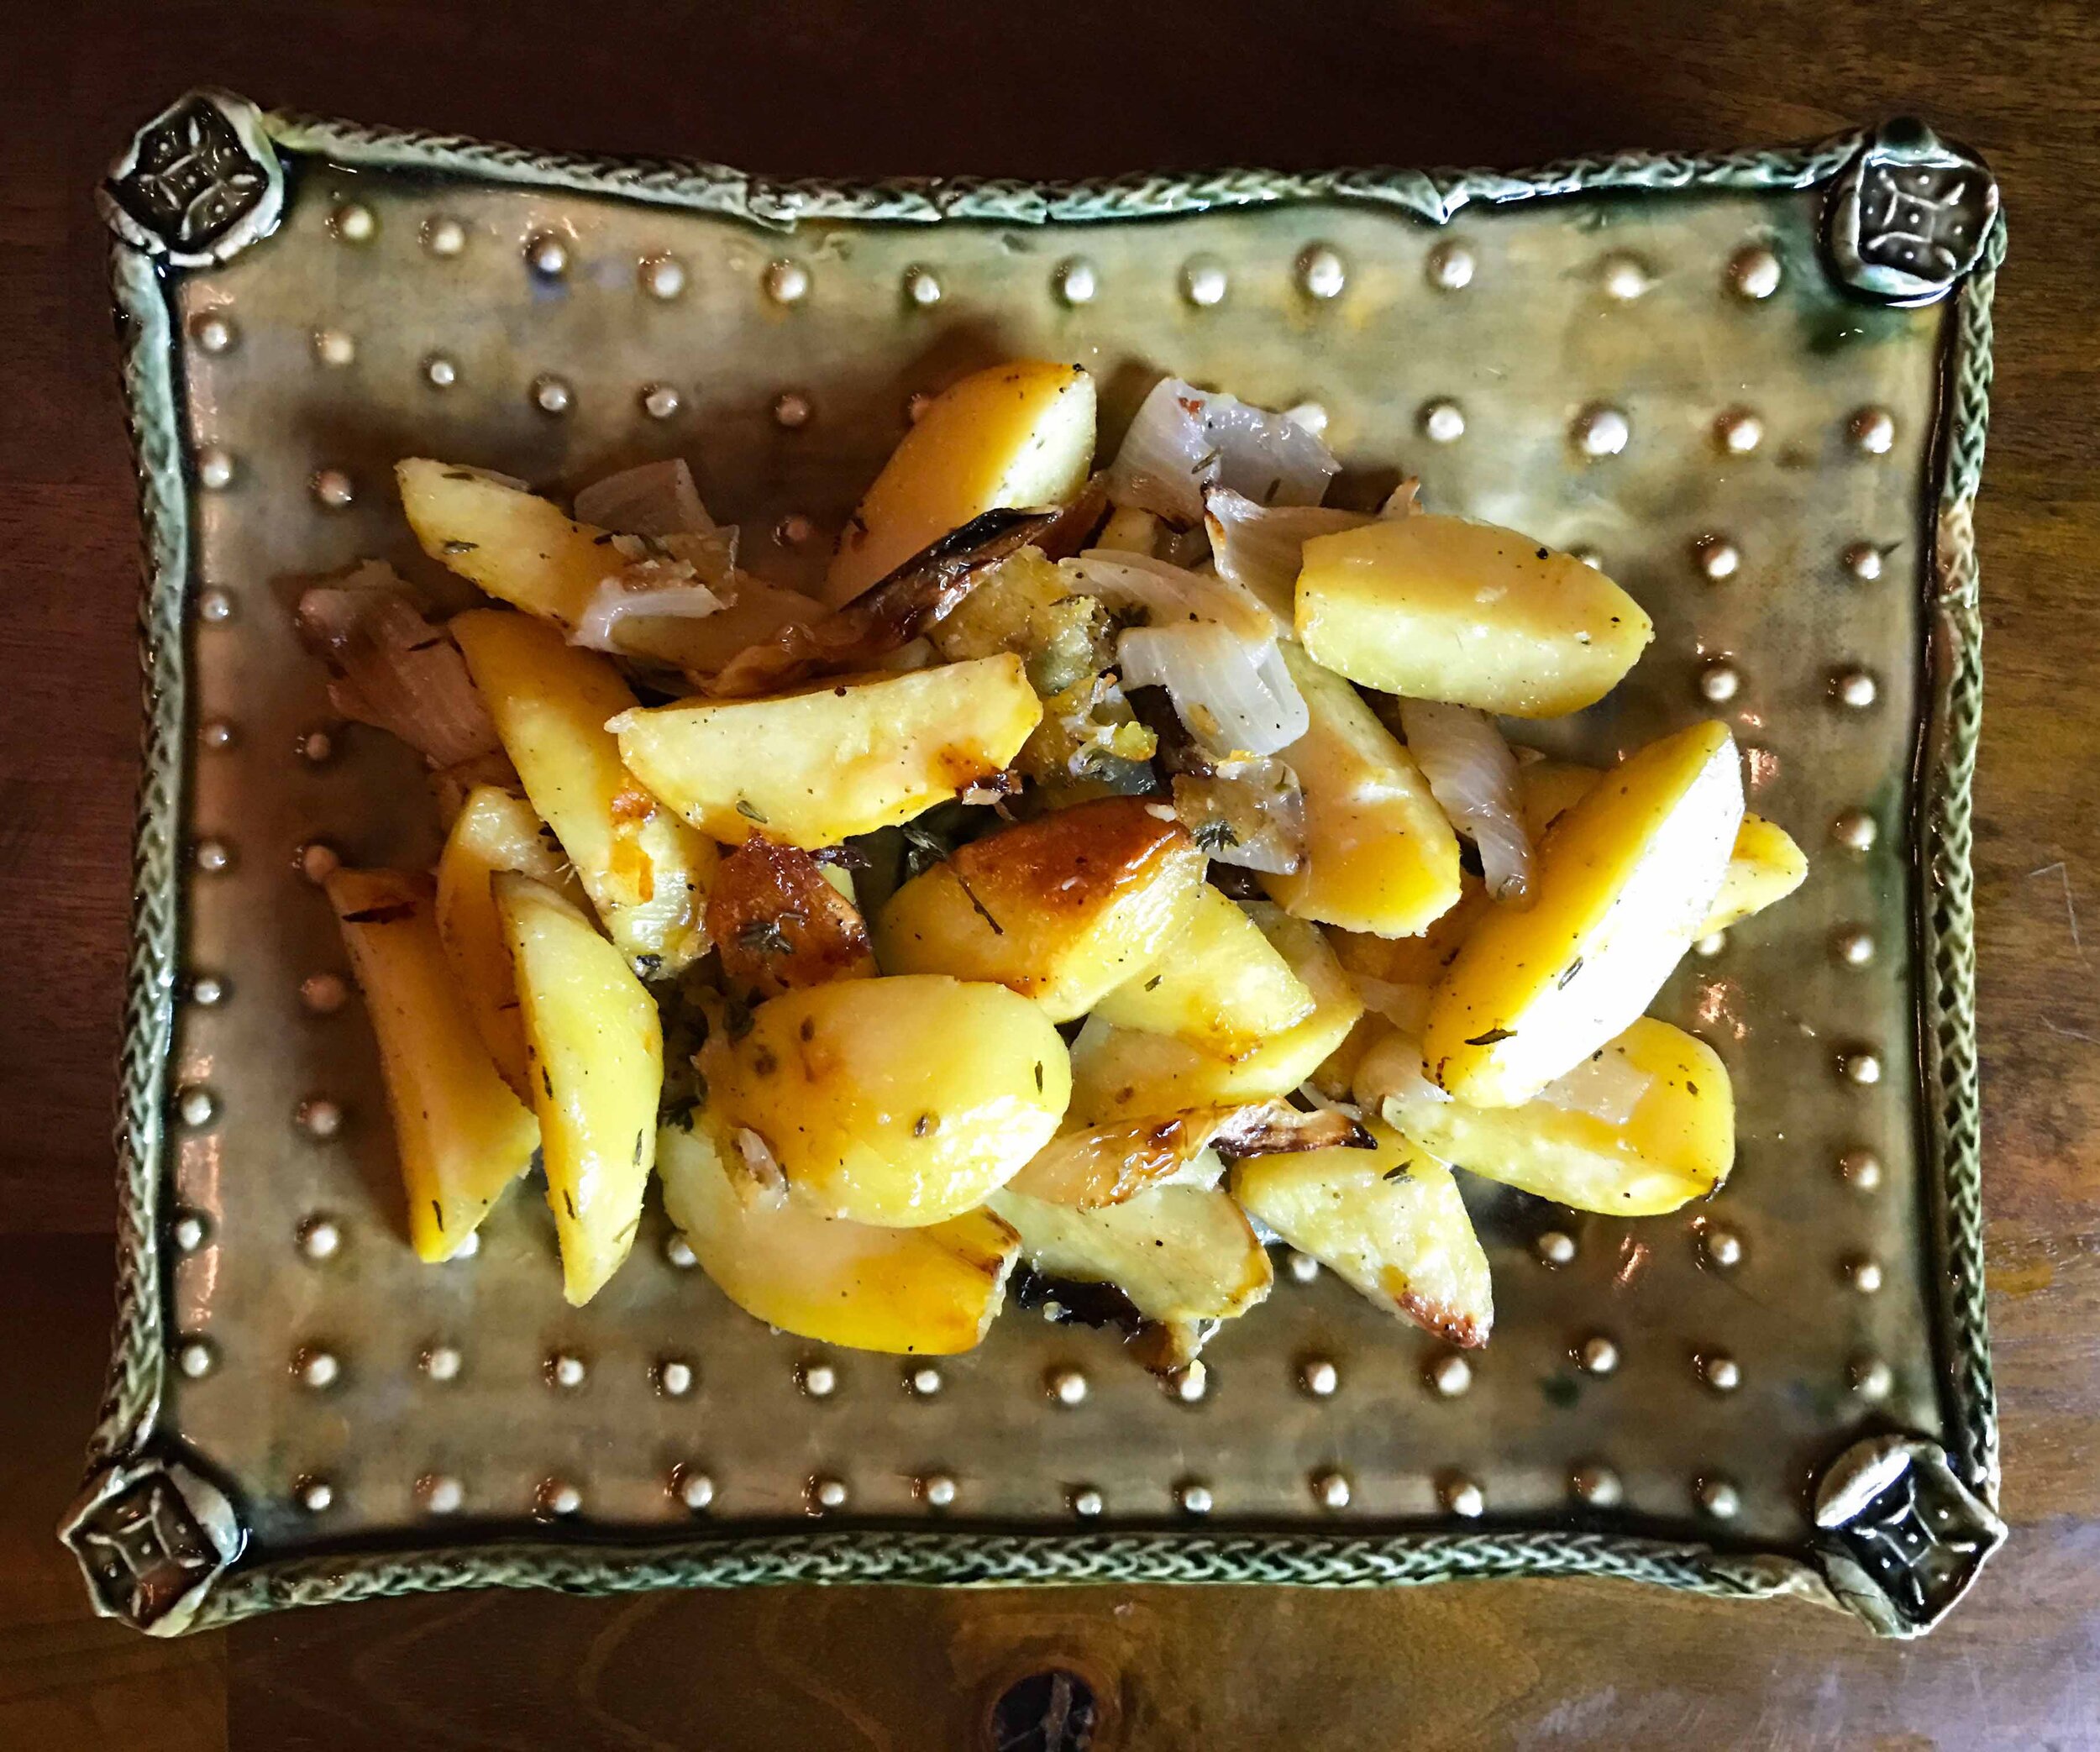 Brenner Family's Roasted Potatoes